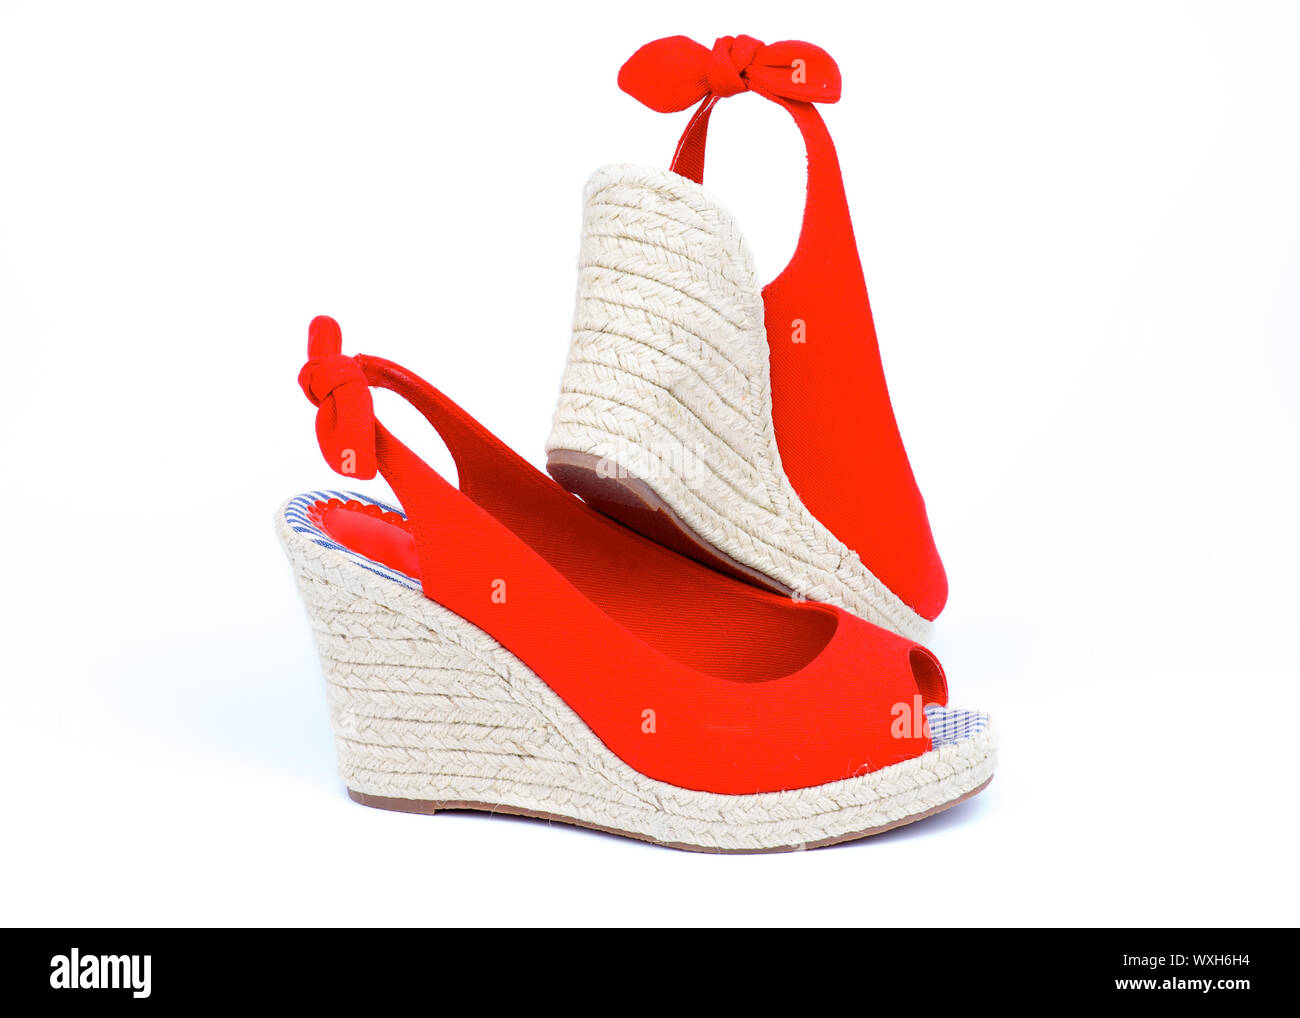 Buy > espadrilles high heels > in stock